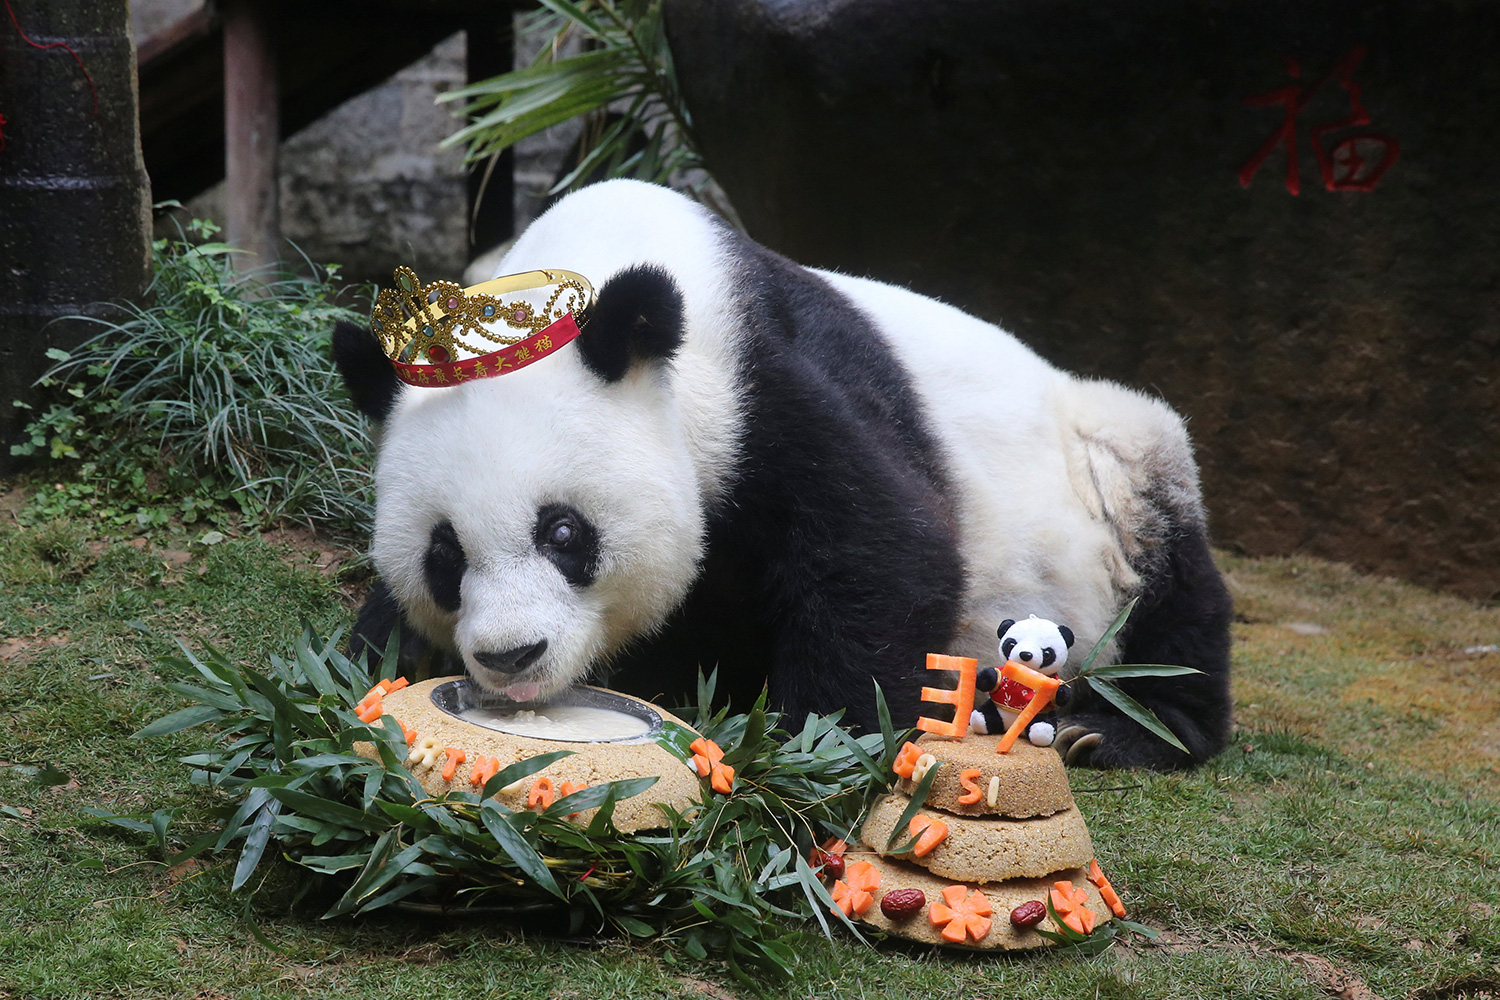 Basi, la panda más longeva del mundo en cautiverio, cumple 37 años